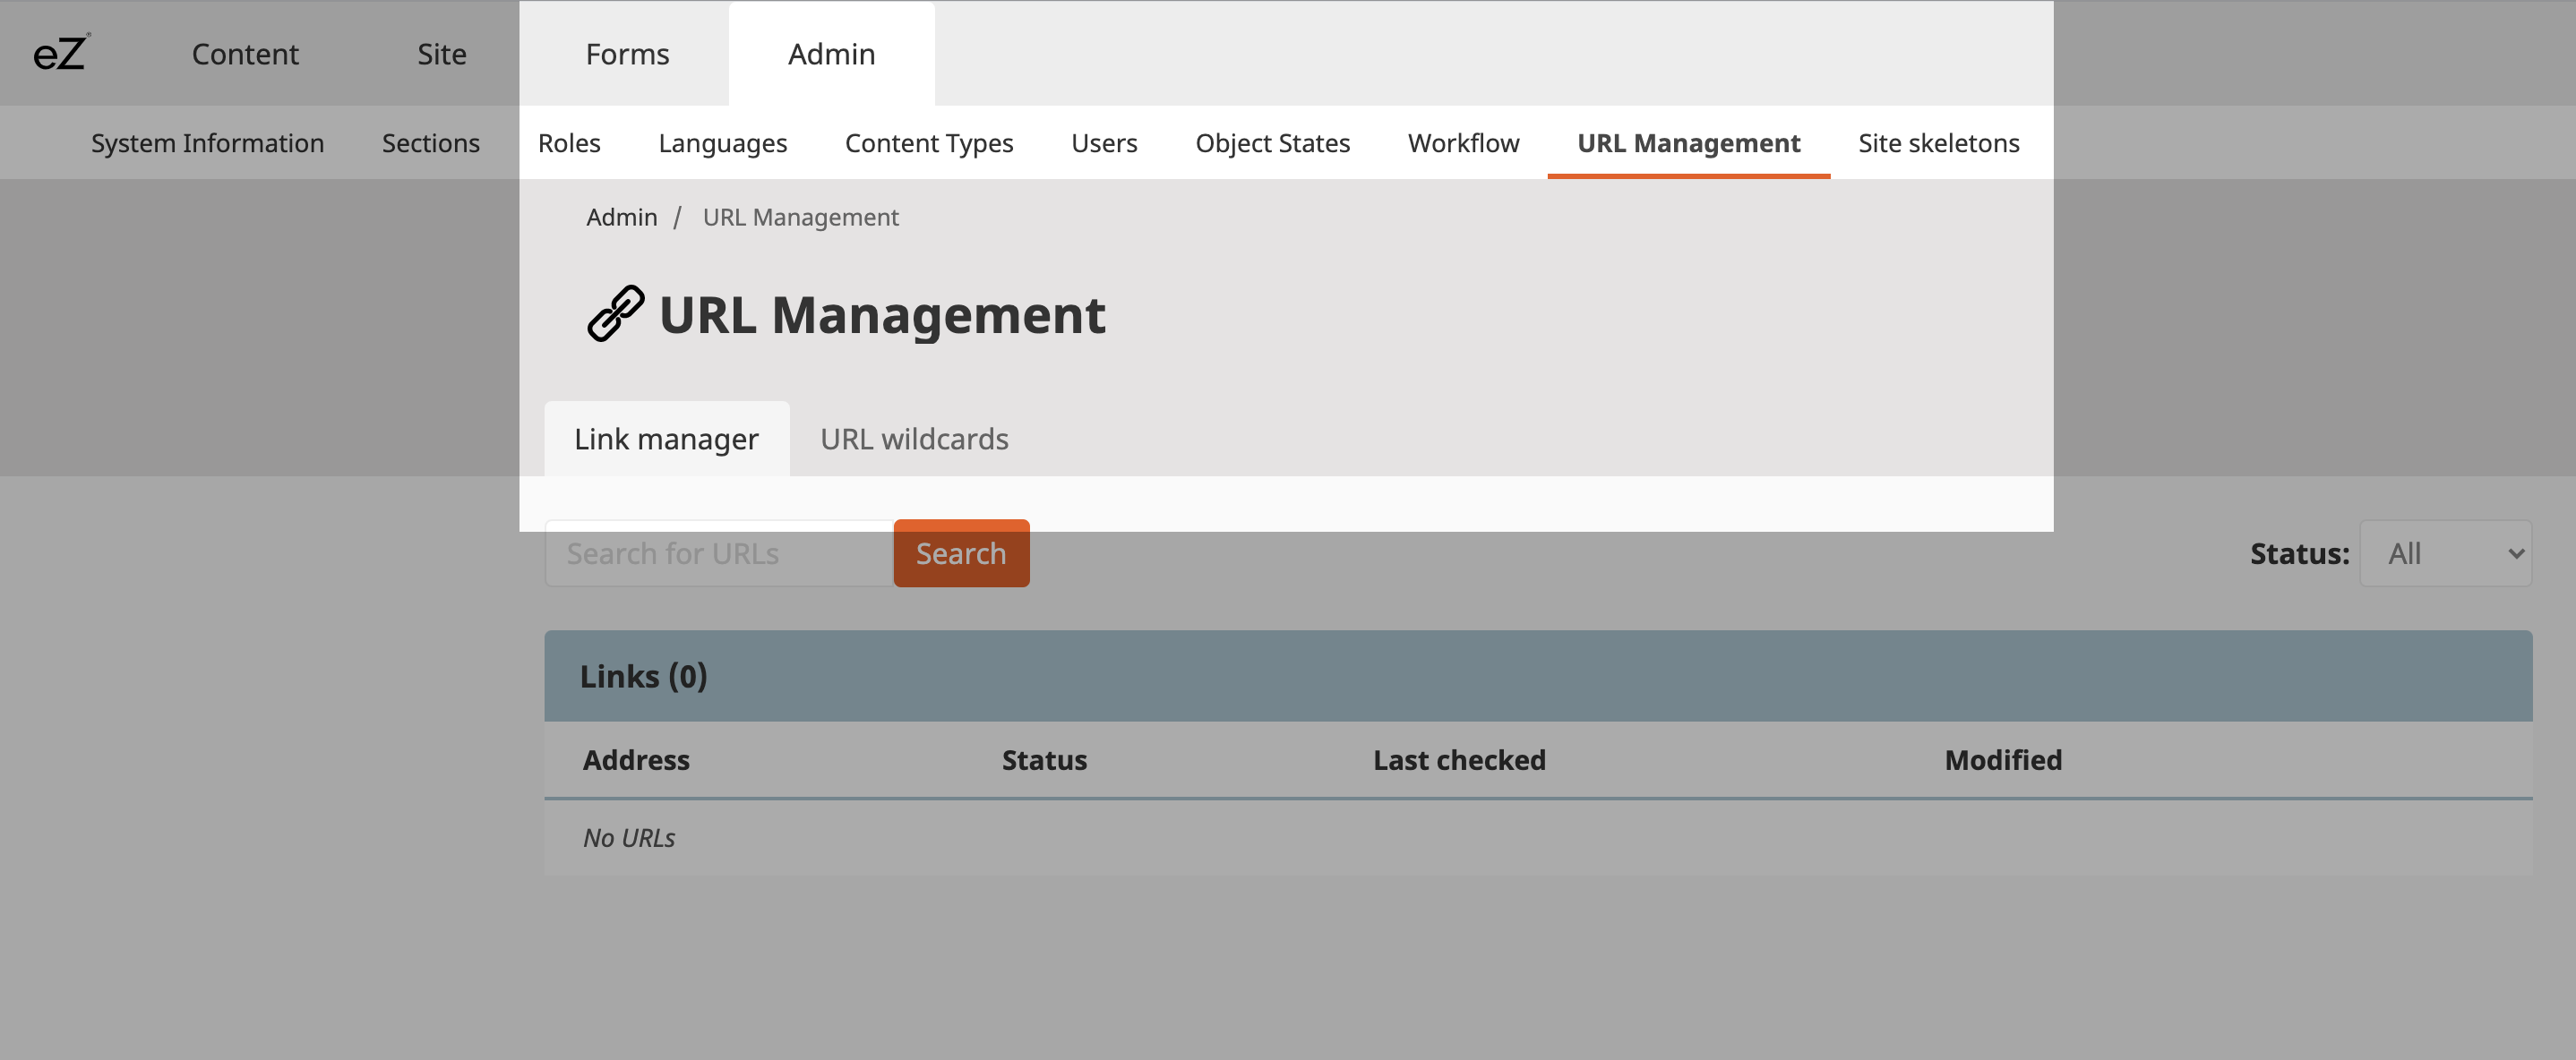 URL Management menu navigation in eZ Platform v3.1